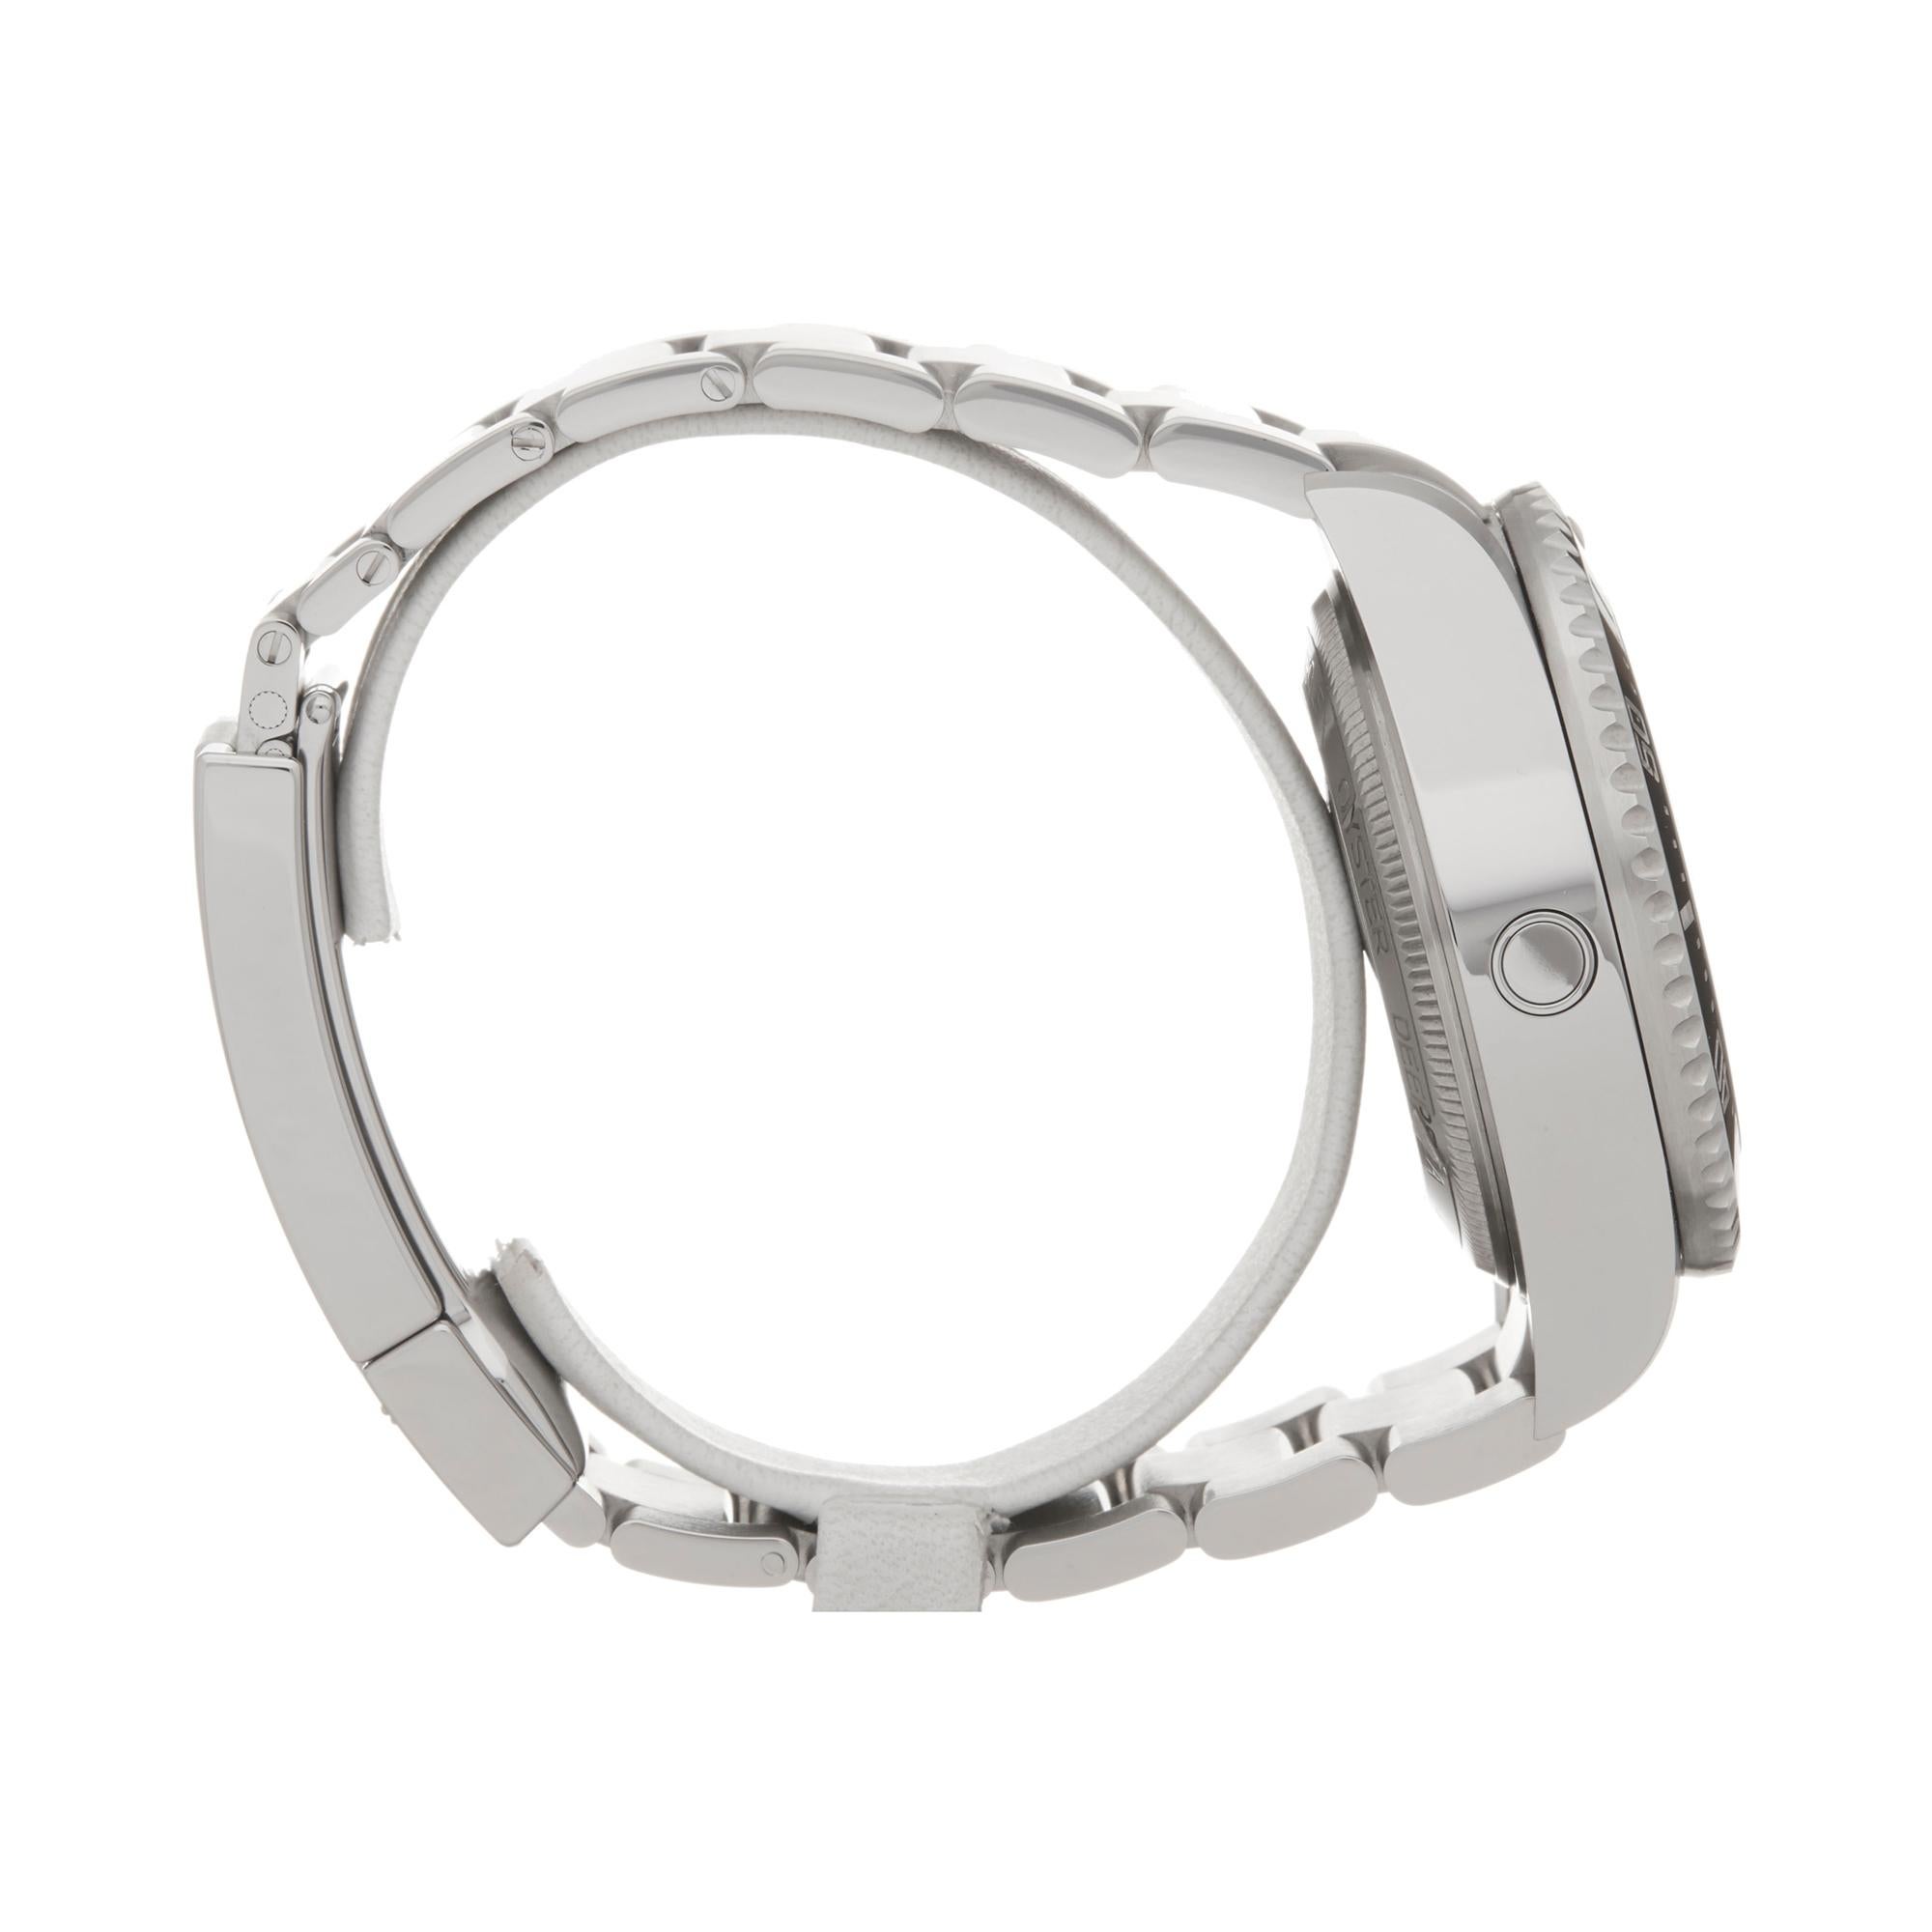 Rolex Sea-Dweller Deepsea Stainless Steel 126660 Wristwatch 1